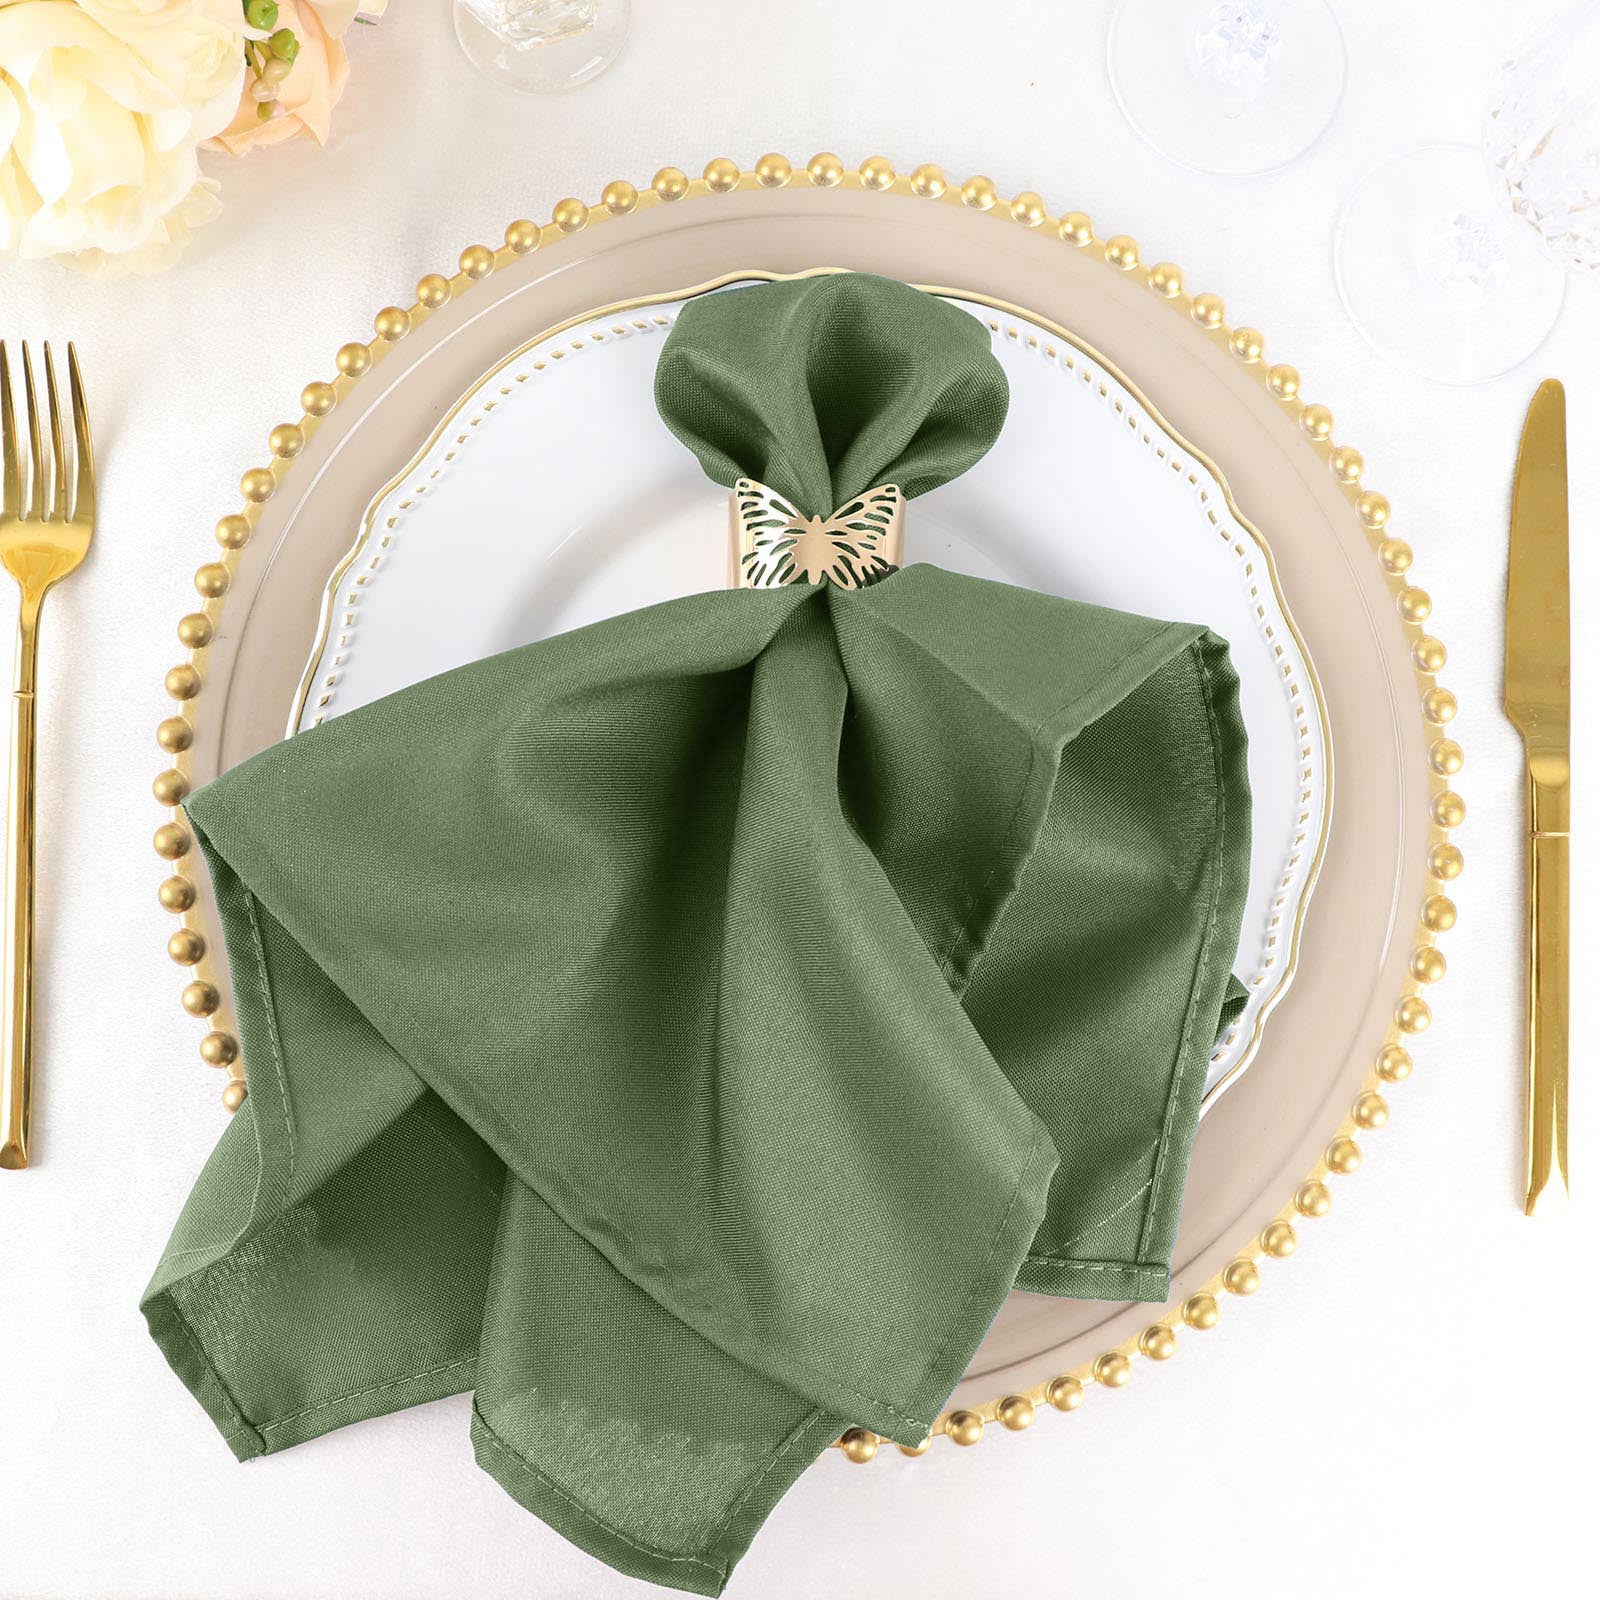 Olive Green Linen Napkin Set of 2. Washed Linen Napkin Set. Olive Green  Cloth Napkins. Table Decor, Table Linens. 